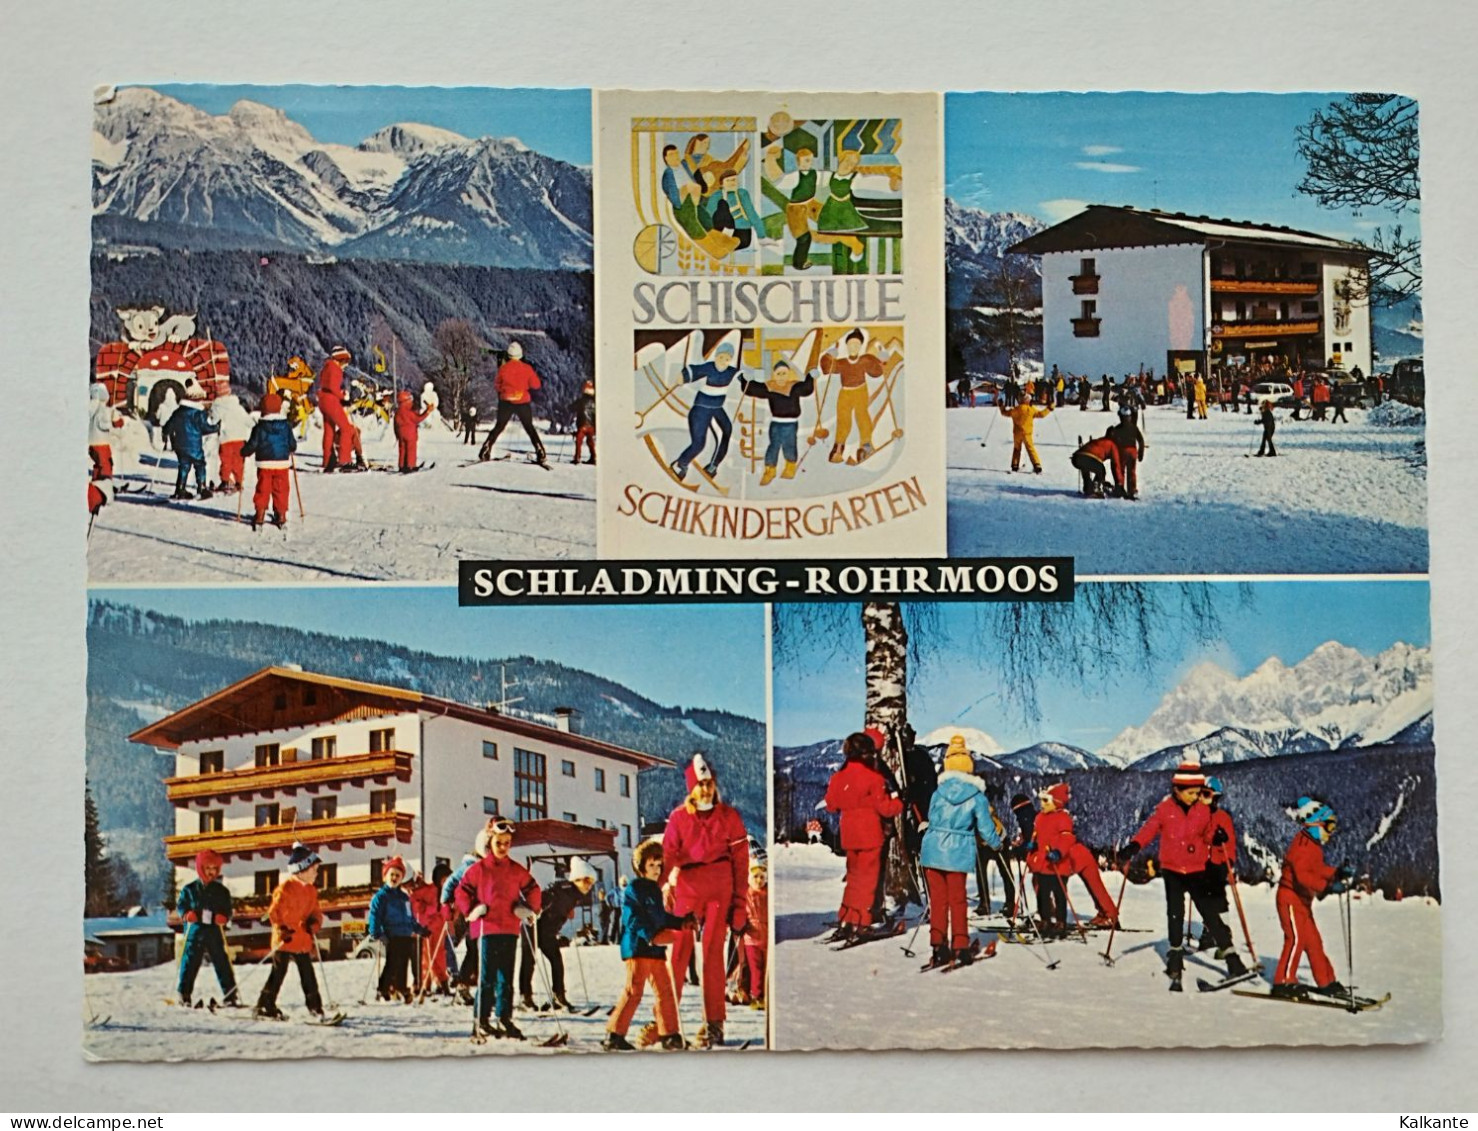 [STIRIA] - SCHLADMING - 1978 - Schischule Schikindergarten - Schladming